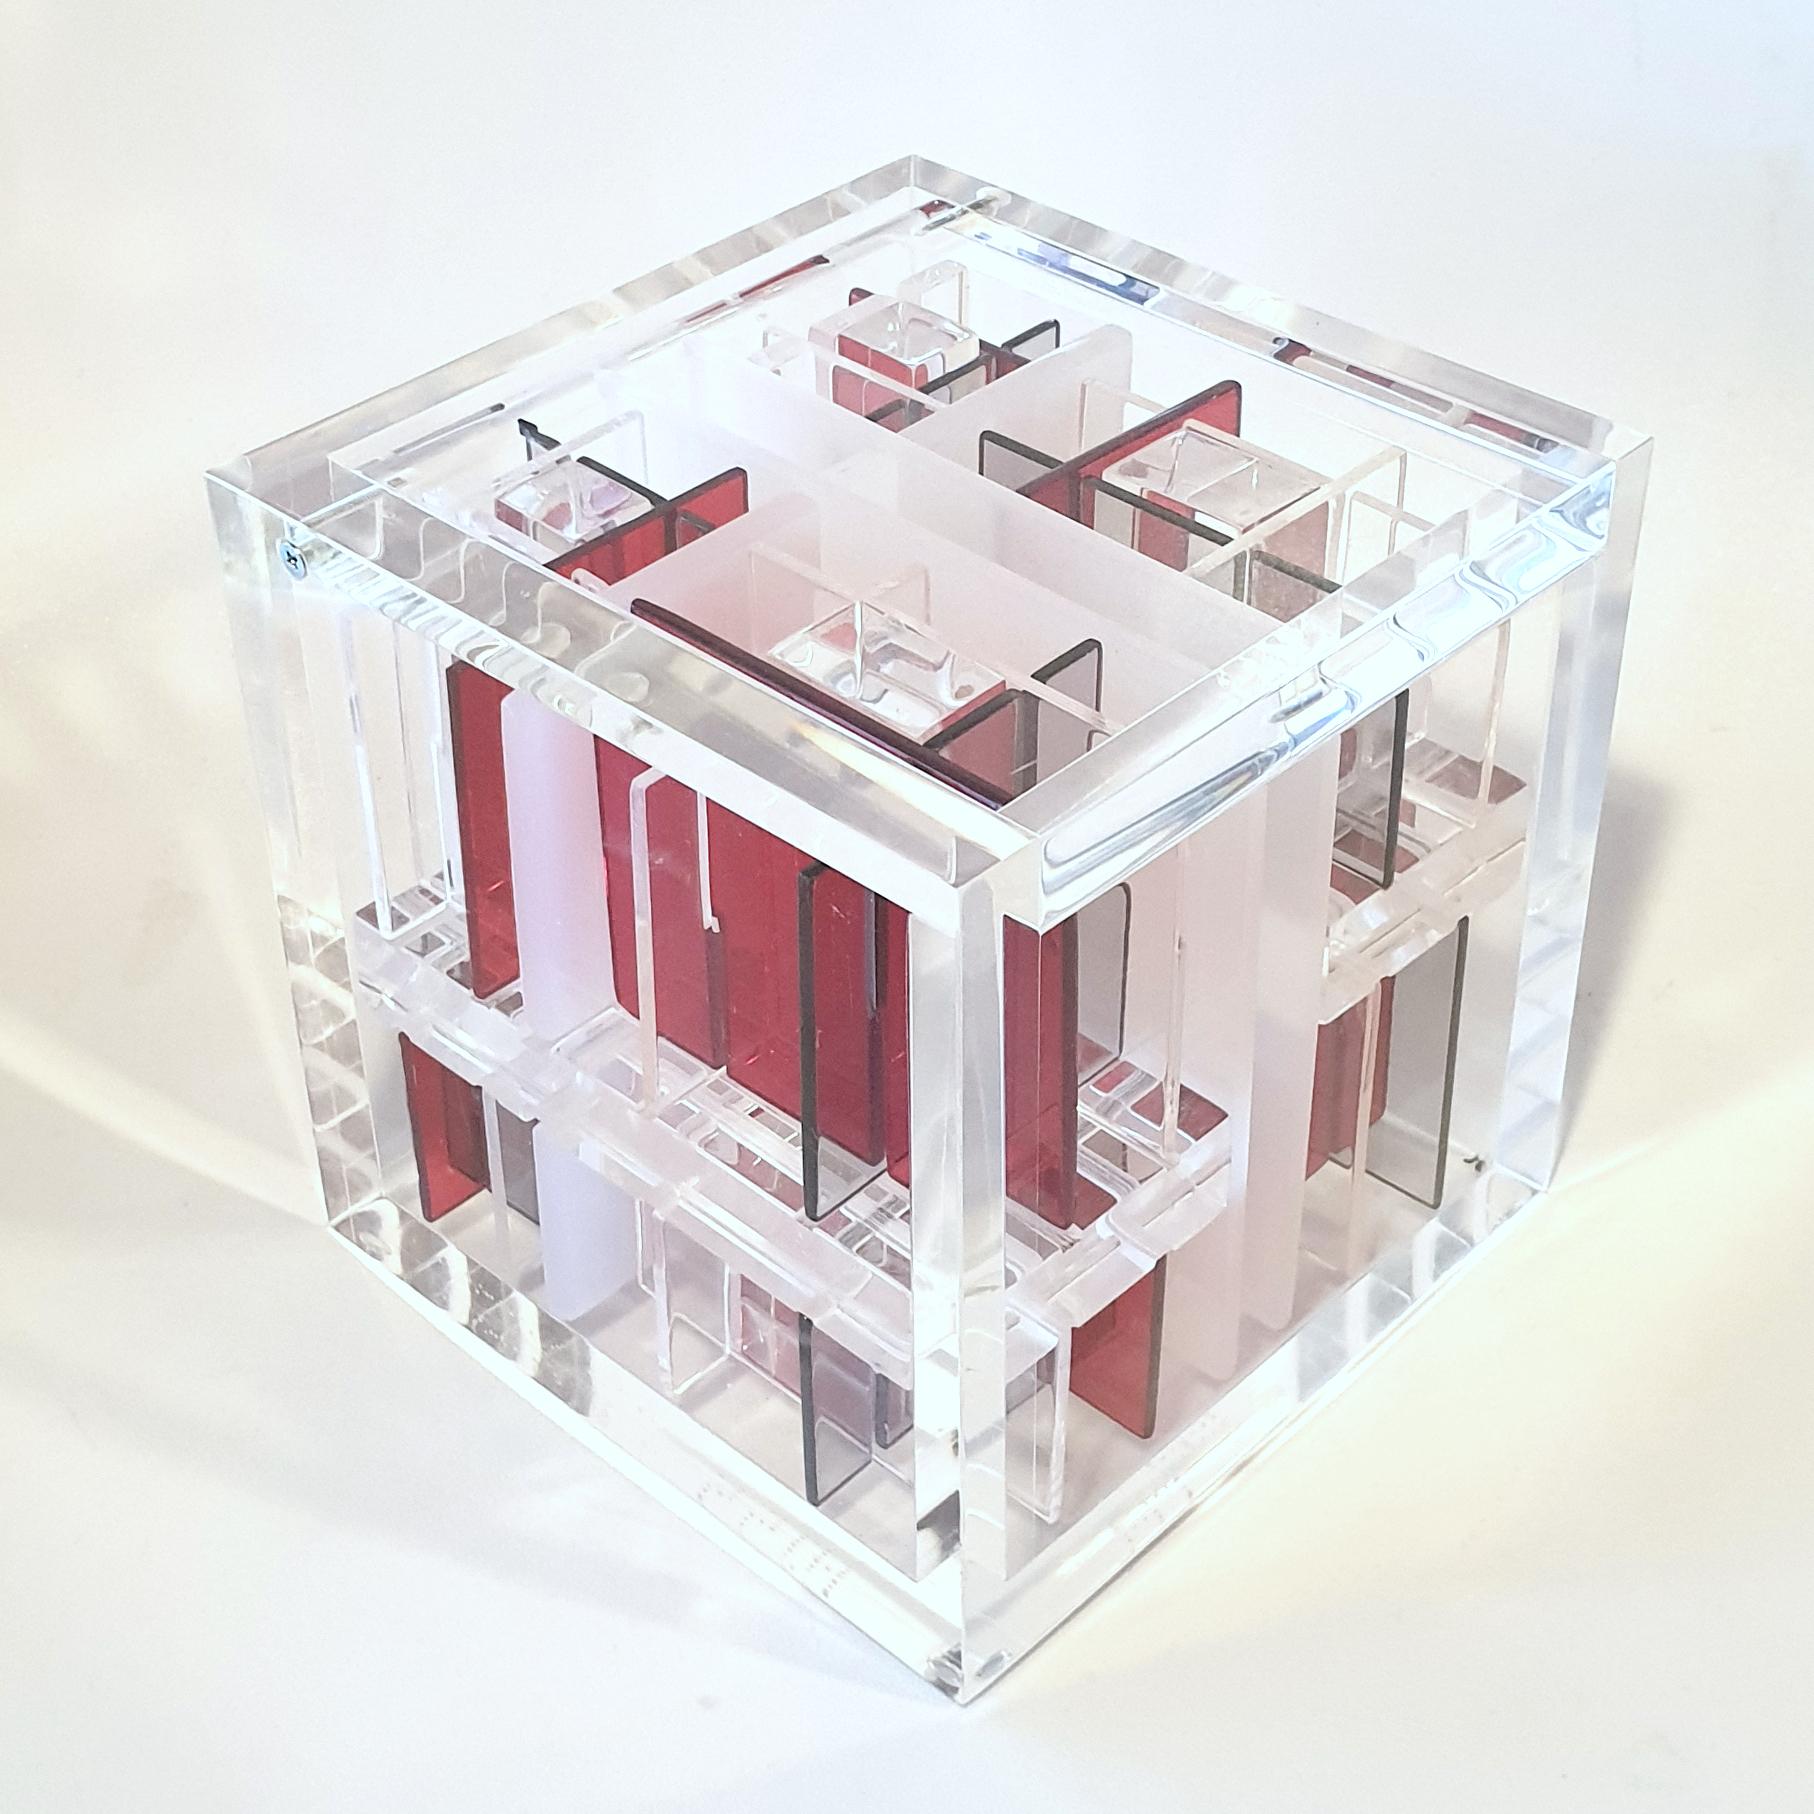 Abstract Sculpture Haringa + Olijve - Système rouge-gris - sculpture cubique géométrique abstraite contemporaine et moderne